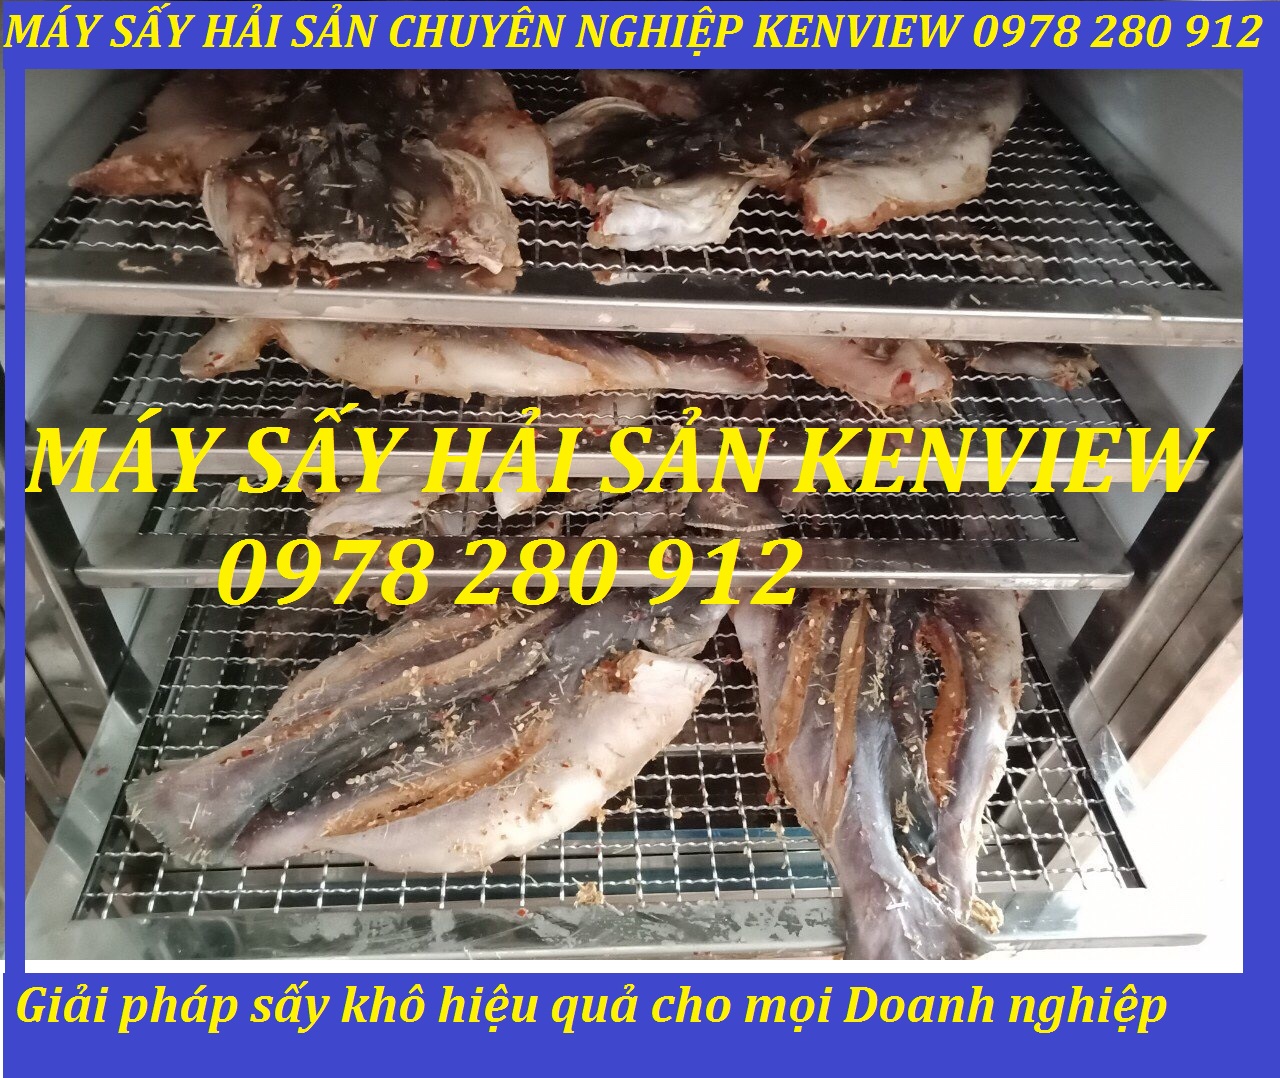 Kenview cung cấp máy sấy cá khô tại Quảng Ninh. 0978 280 912